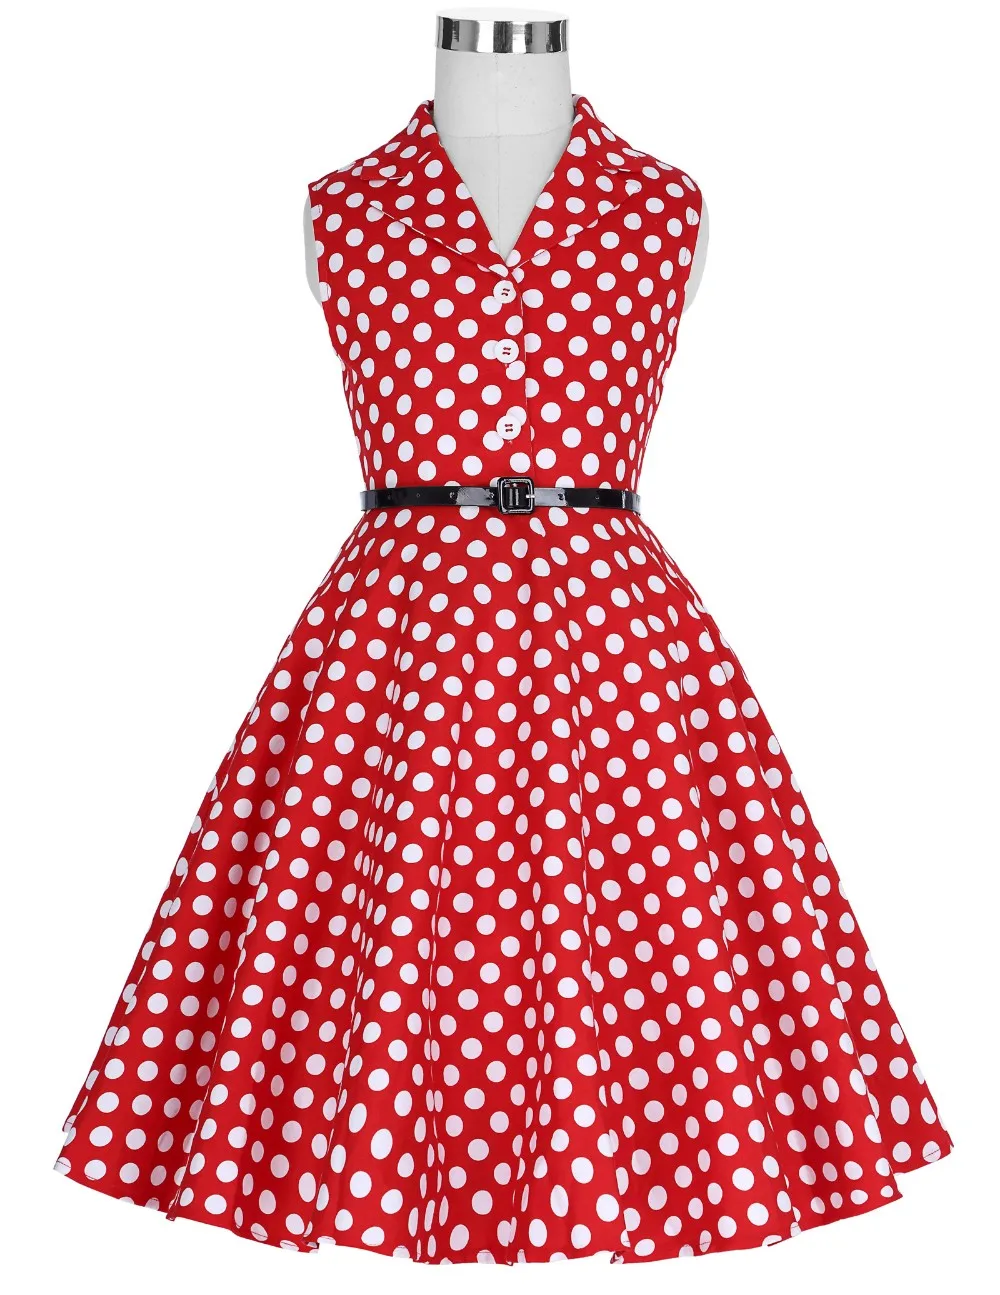 red polka dot dress vintage